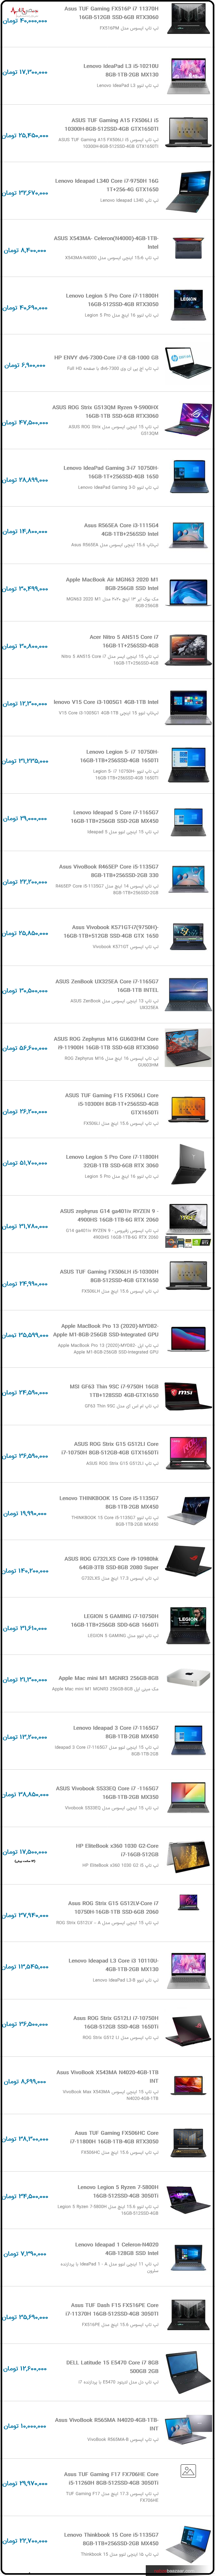 قیمت روز لپ تاپ ایسوس و لنوو امروز در بازار تهران ۱۶ دی ۱۴۰۰